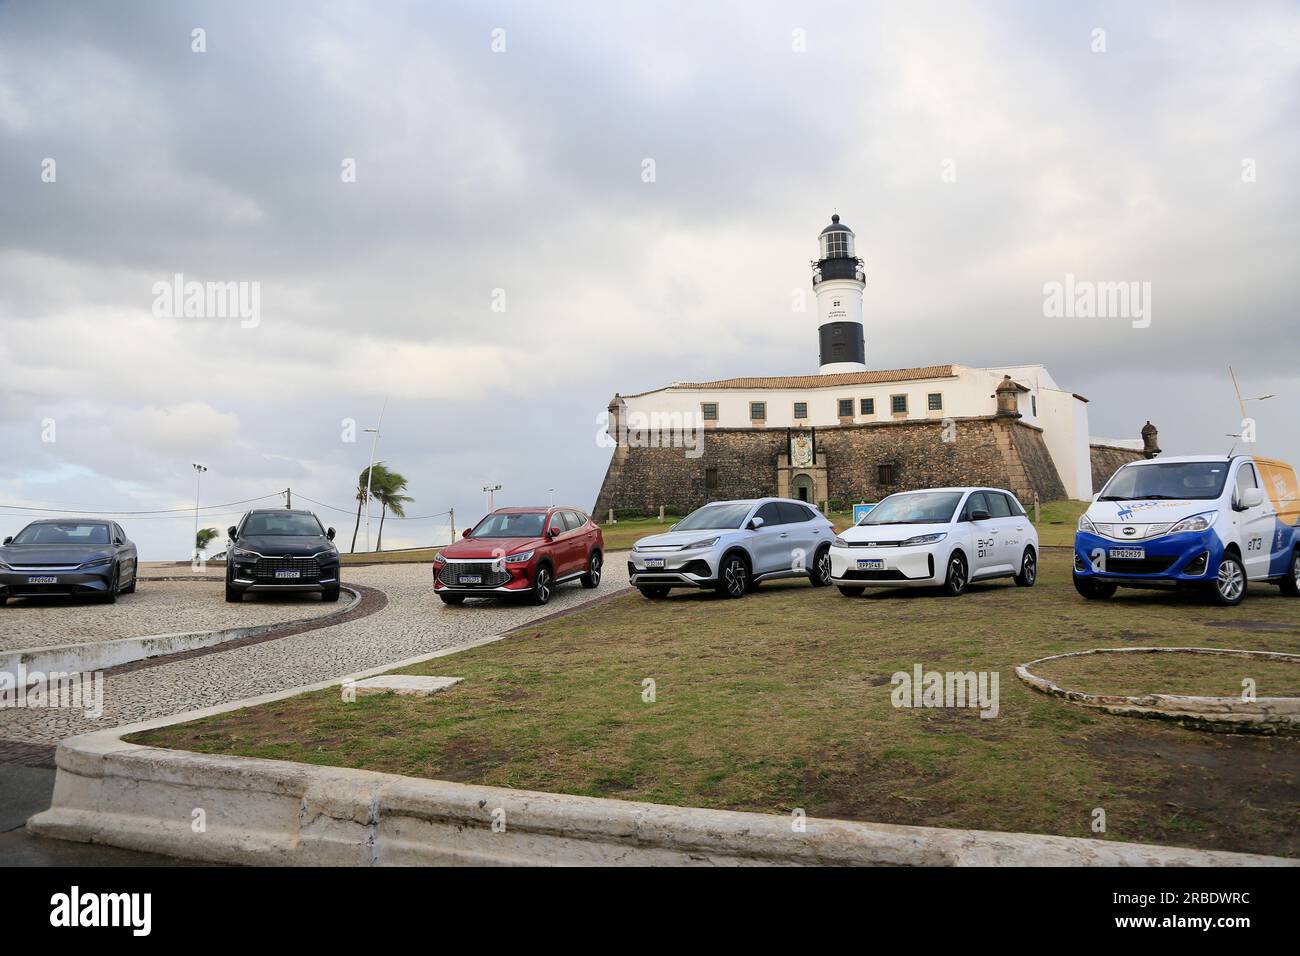 salvador, bahia, brasilien - 4. juli 2023: Fahrzeuge werden auf Farol da Barra während der Werkseinführung des chinesischen Automobilherstellers BYD ausgestellt, der eine fa Stockfoto